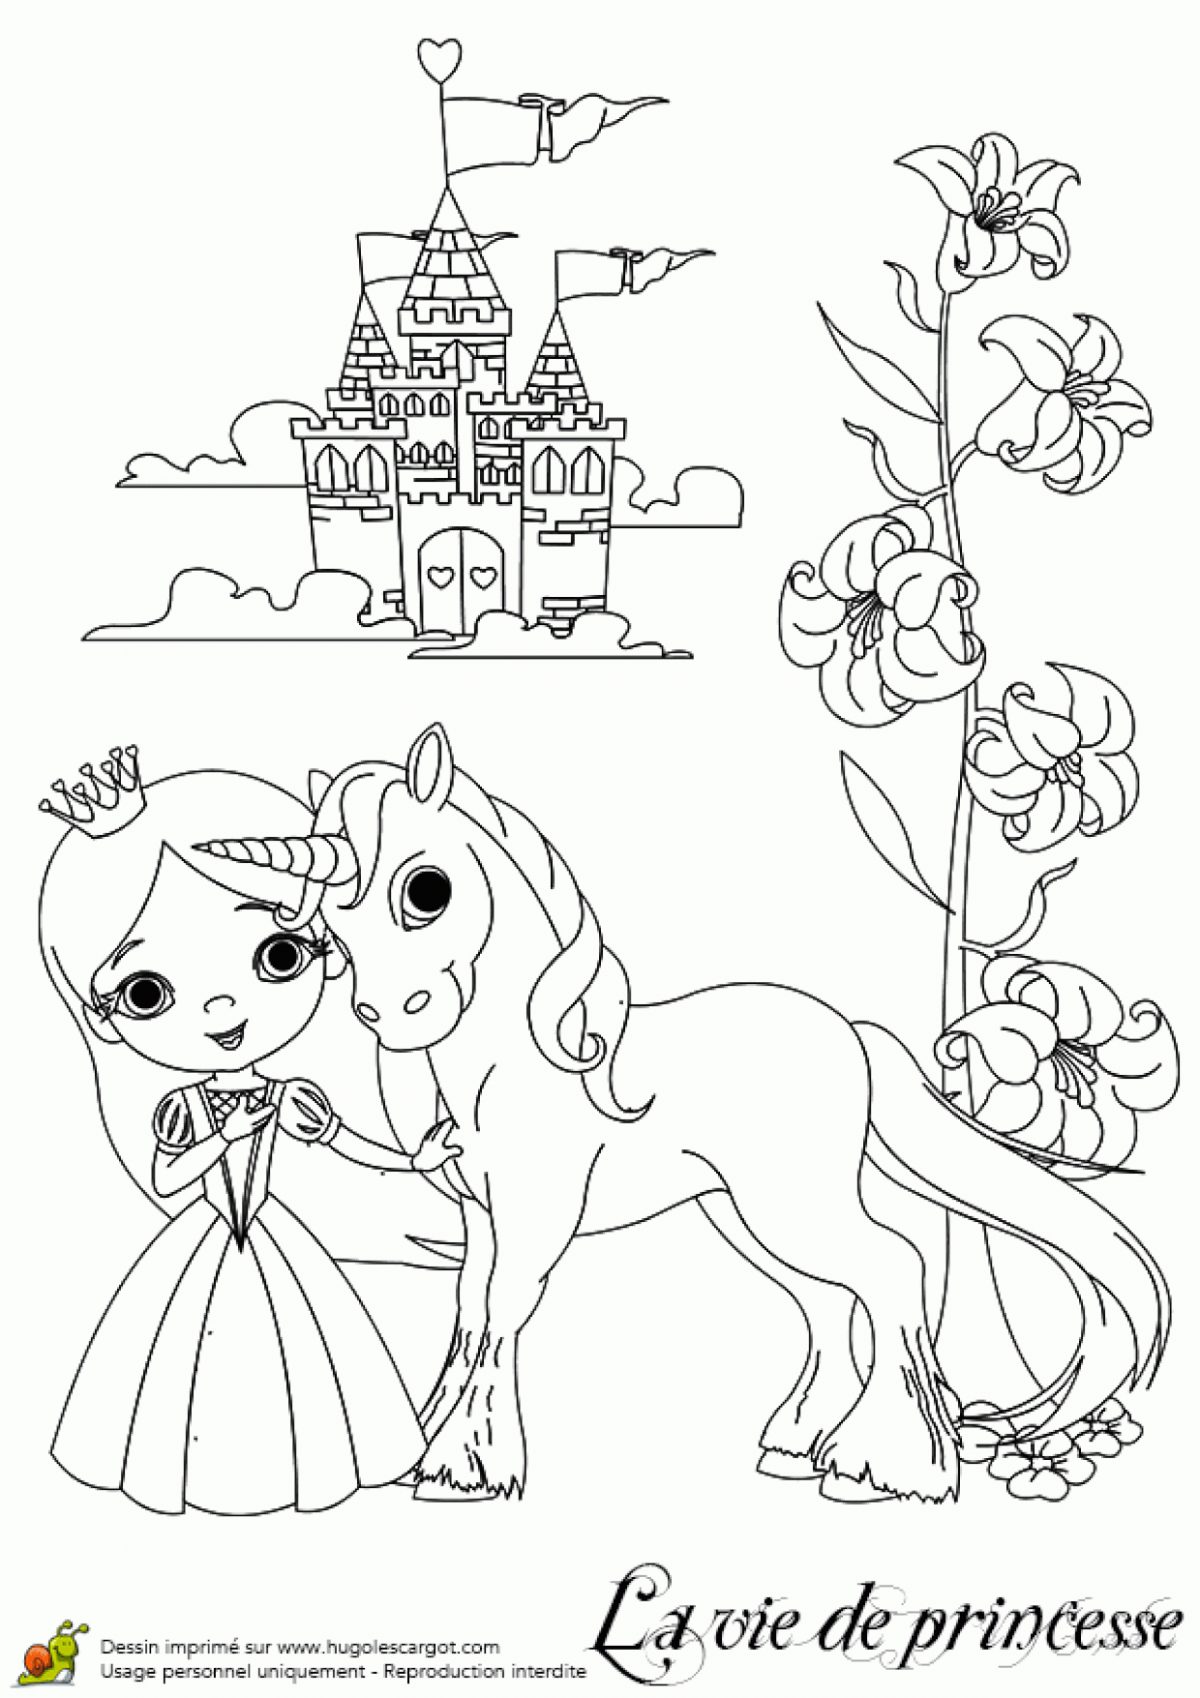 Coloriage D'une Princesse Avec Son Licorne destiné Chateau De Princesse